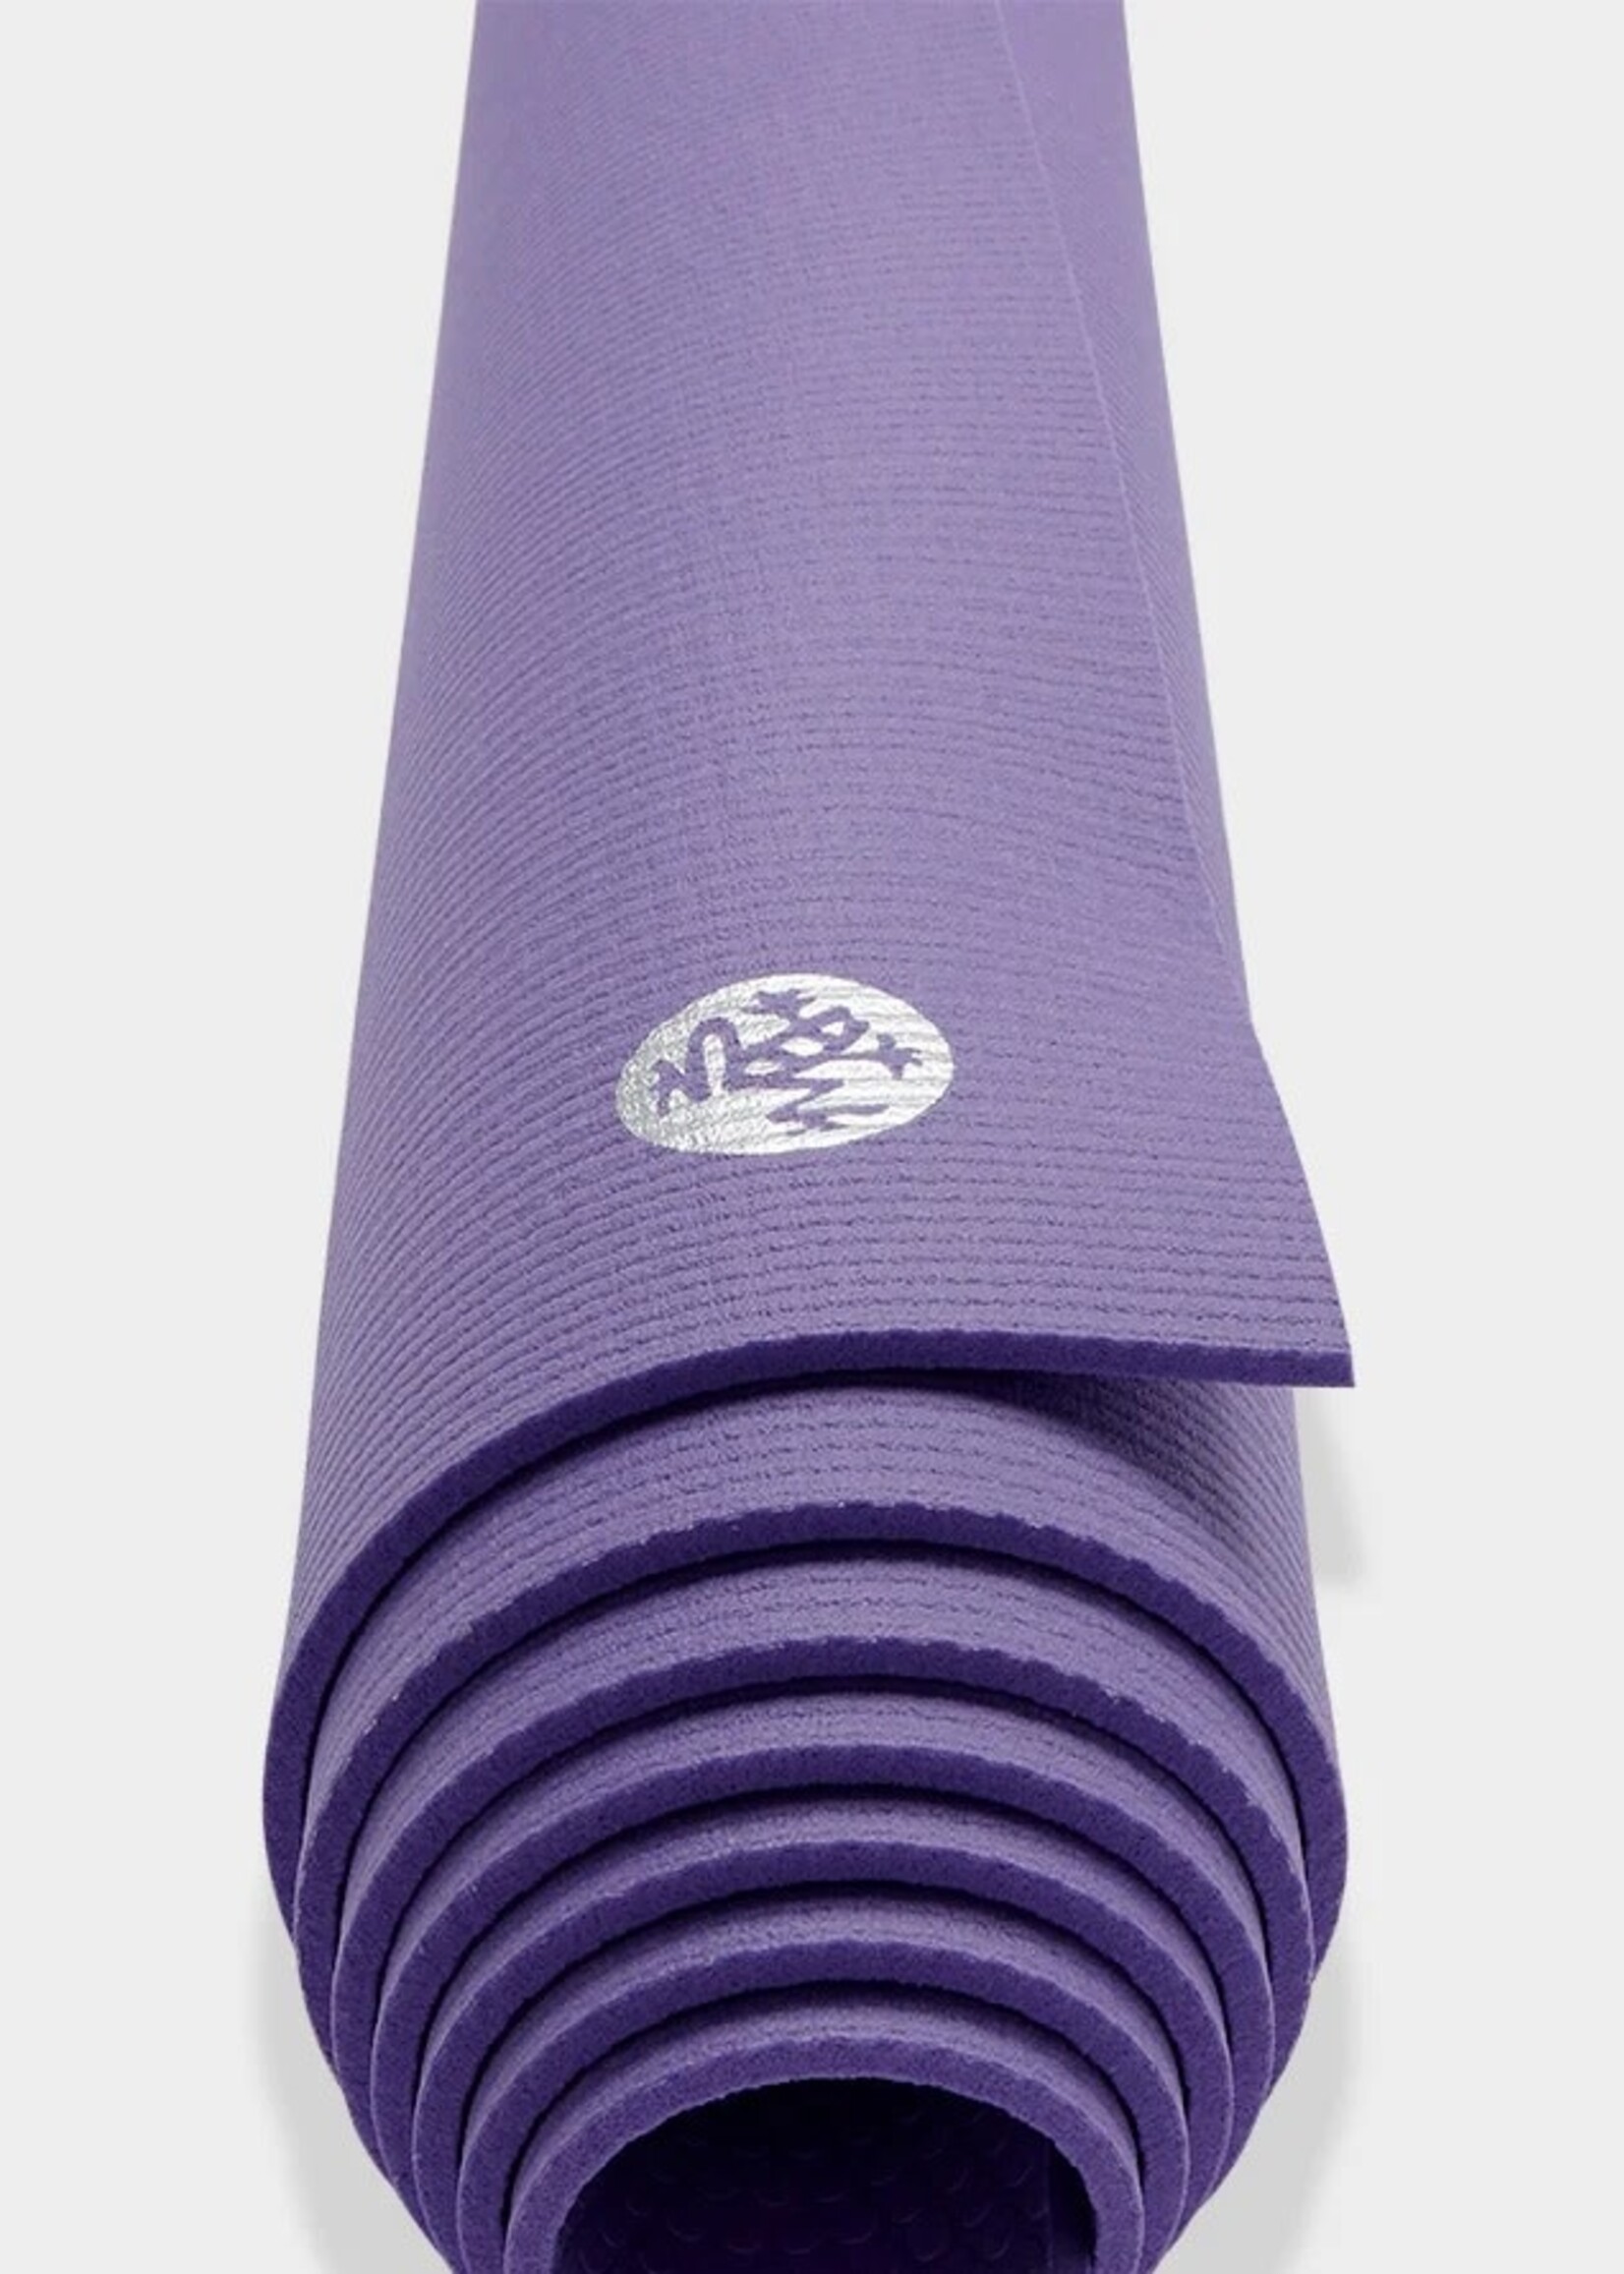 Manduka Prolite Yoga Mat